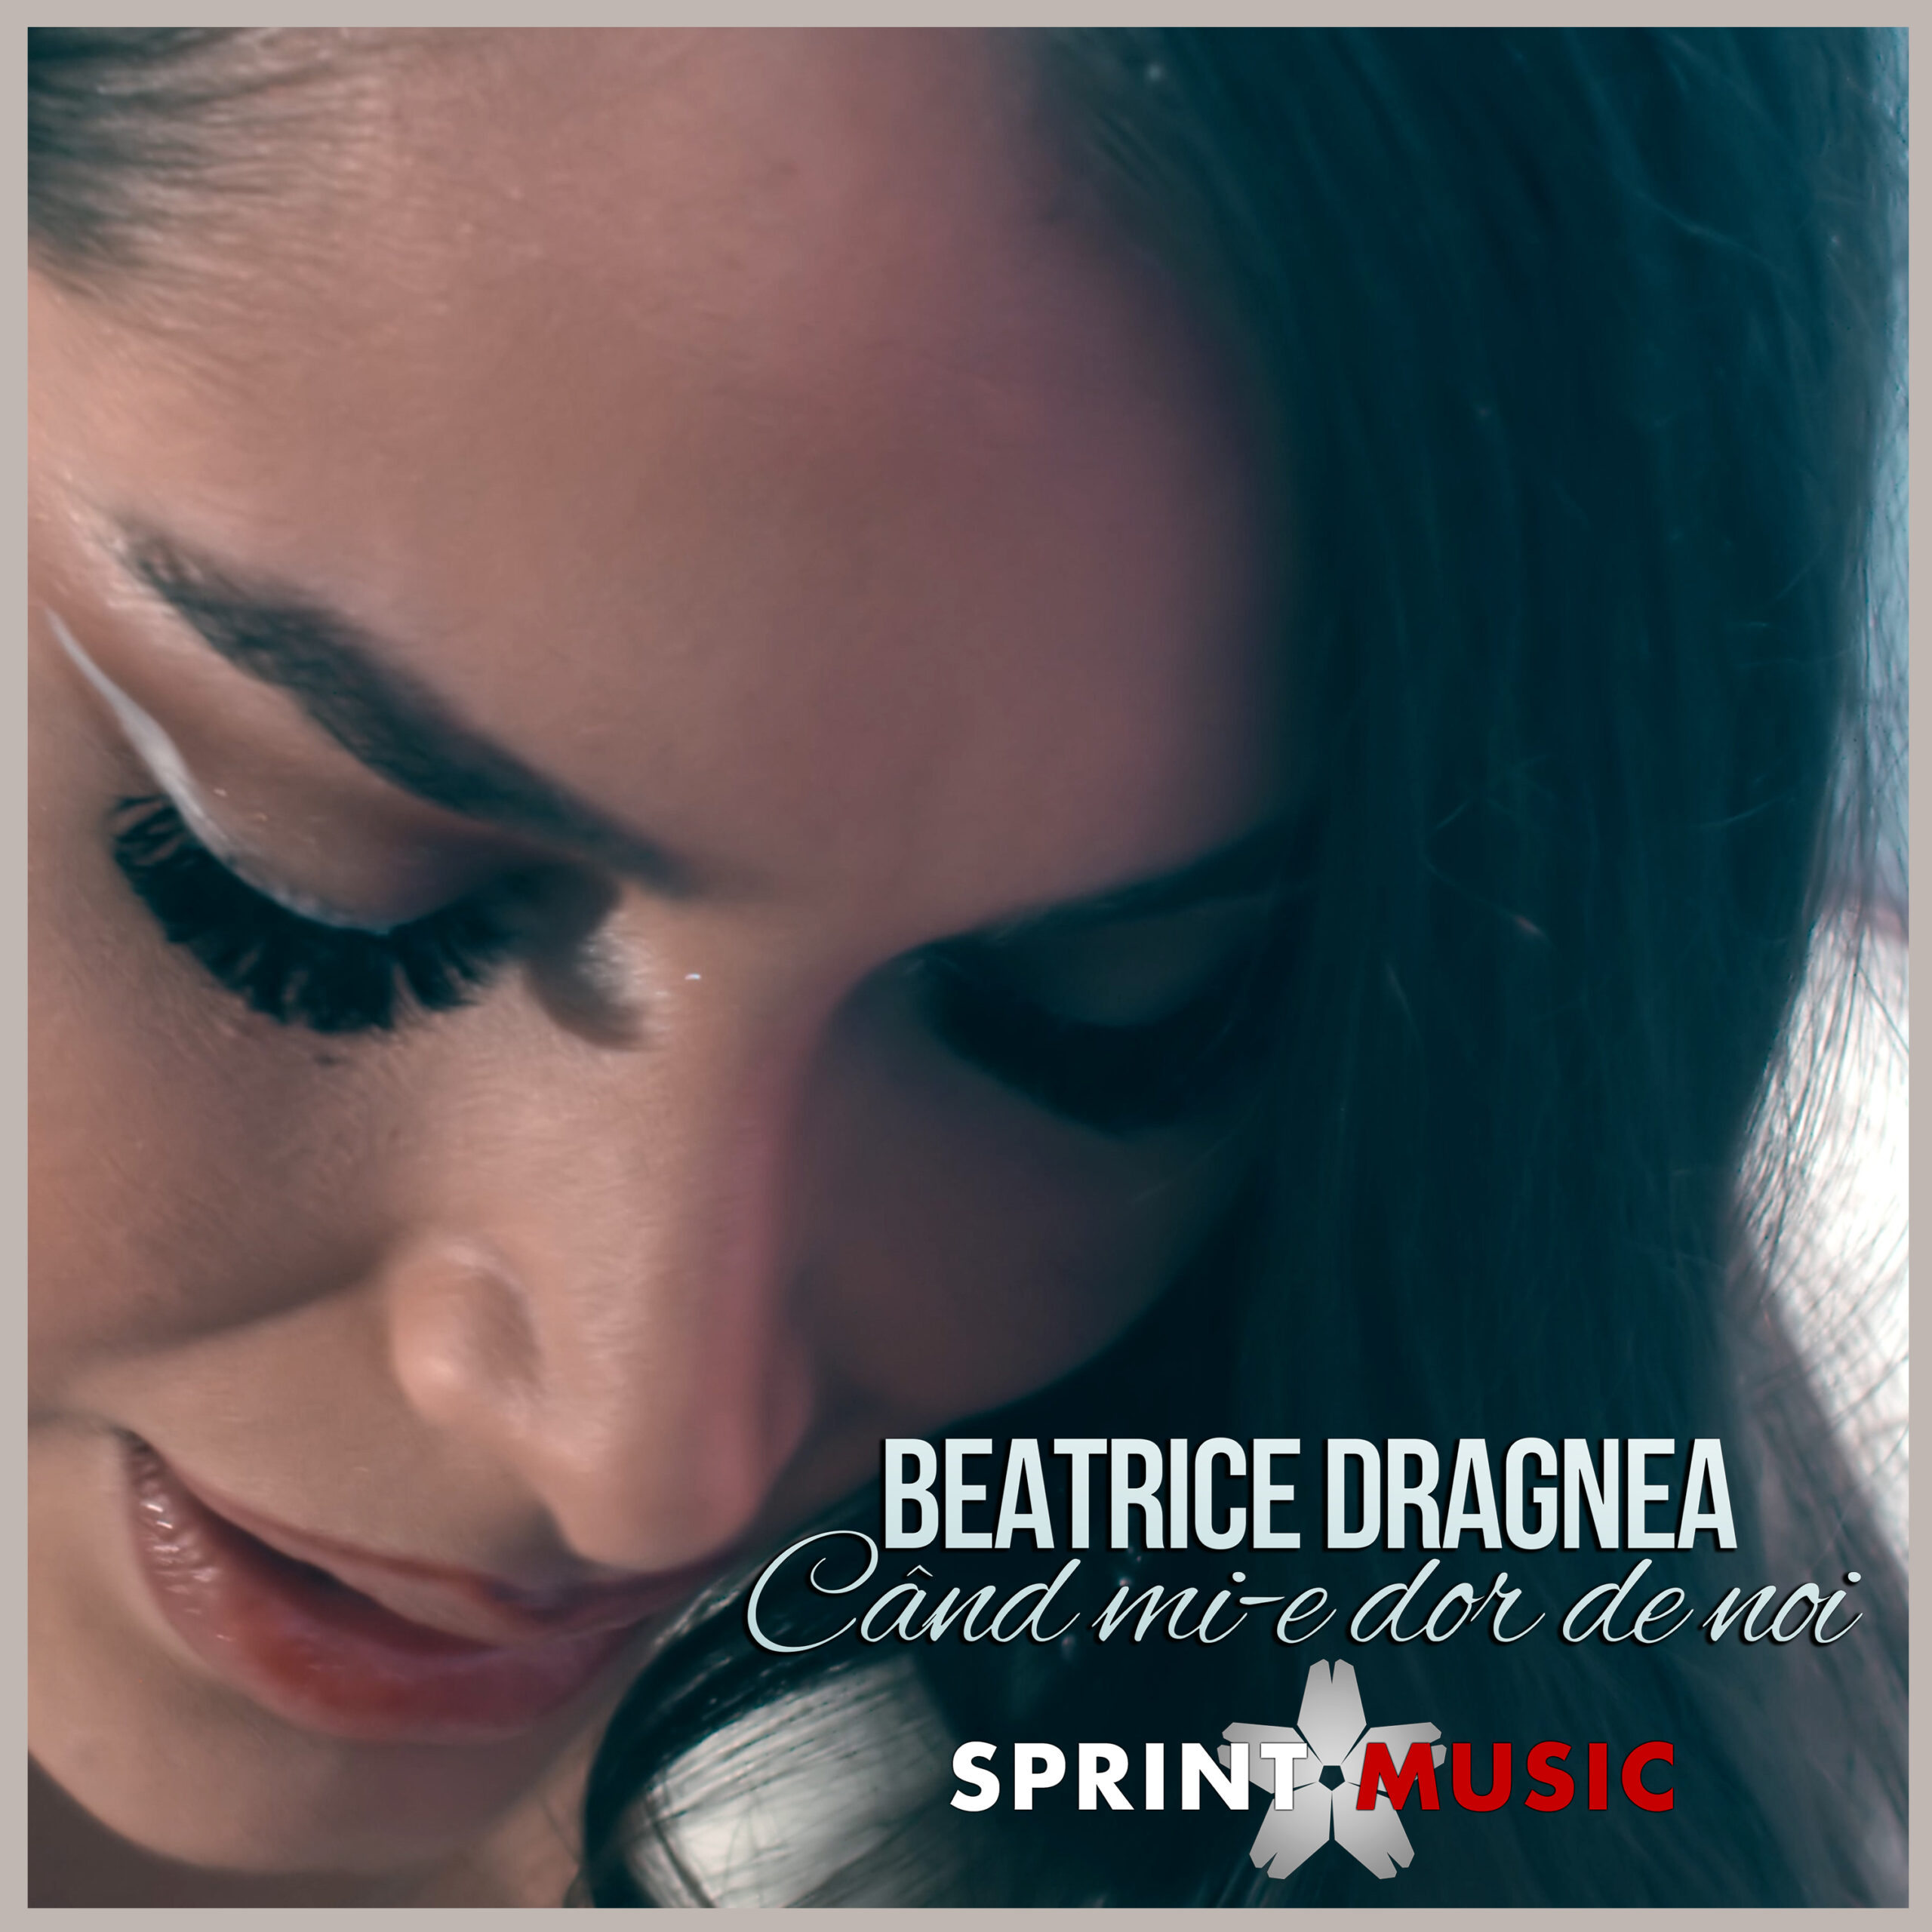 Beatrice dragnea